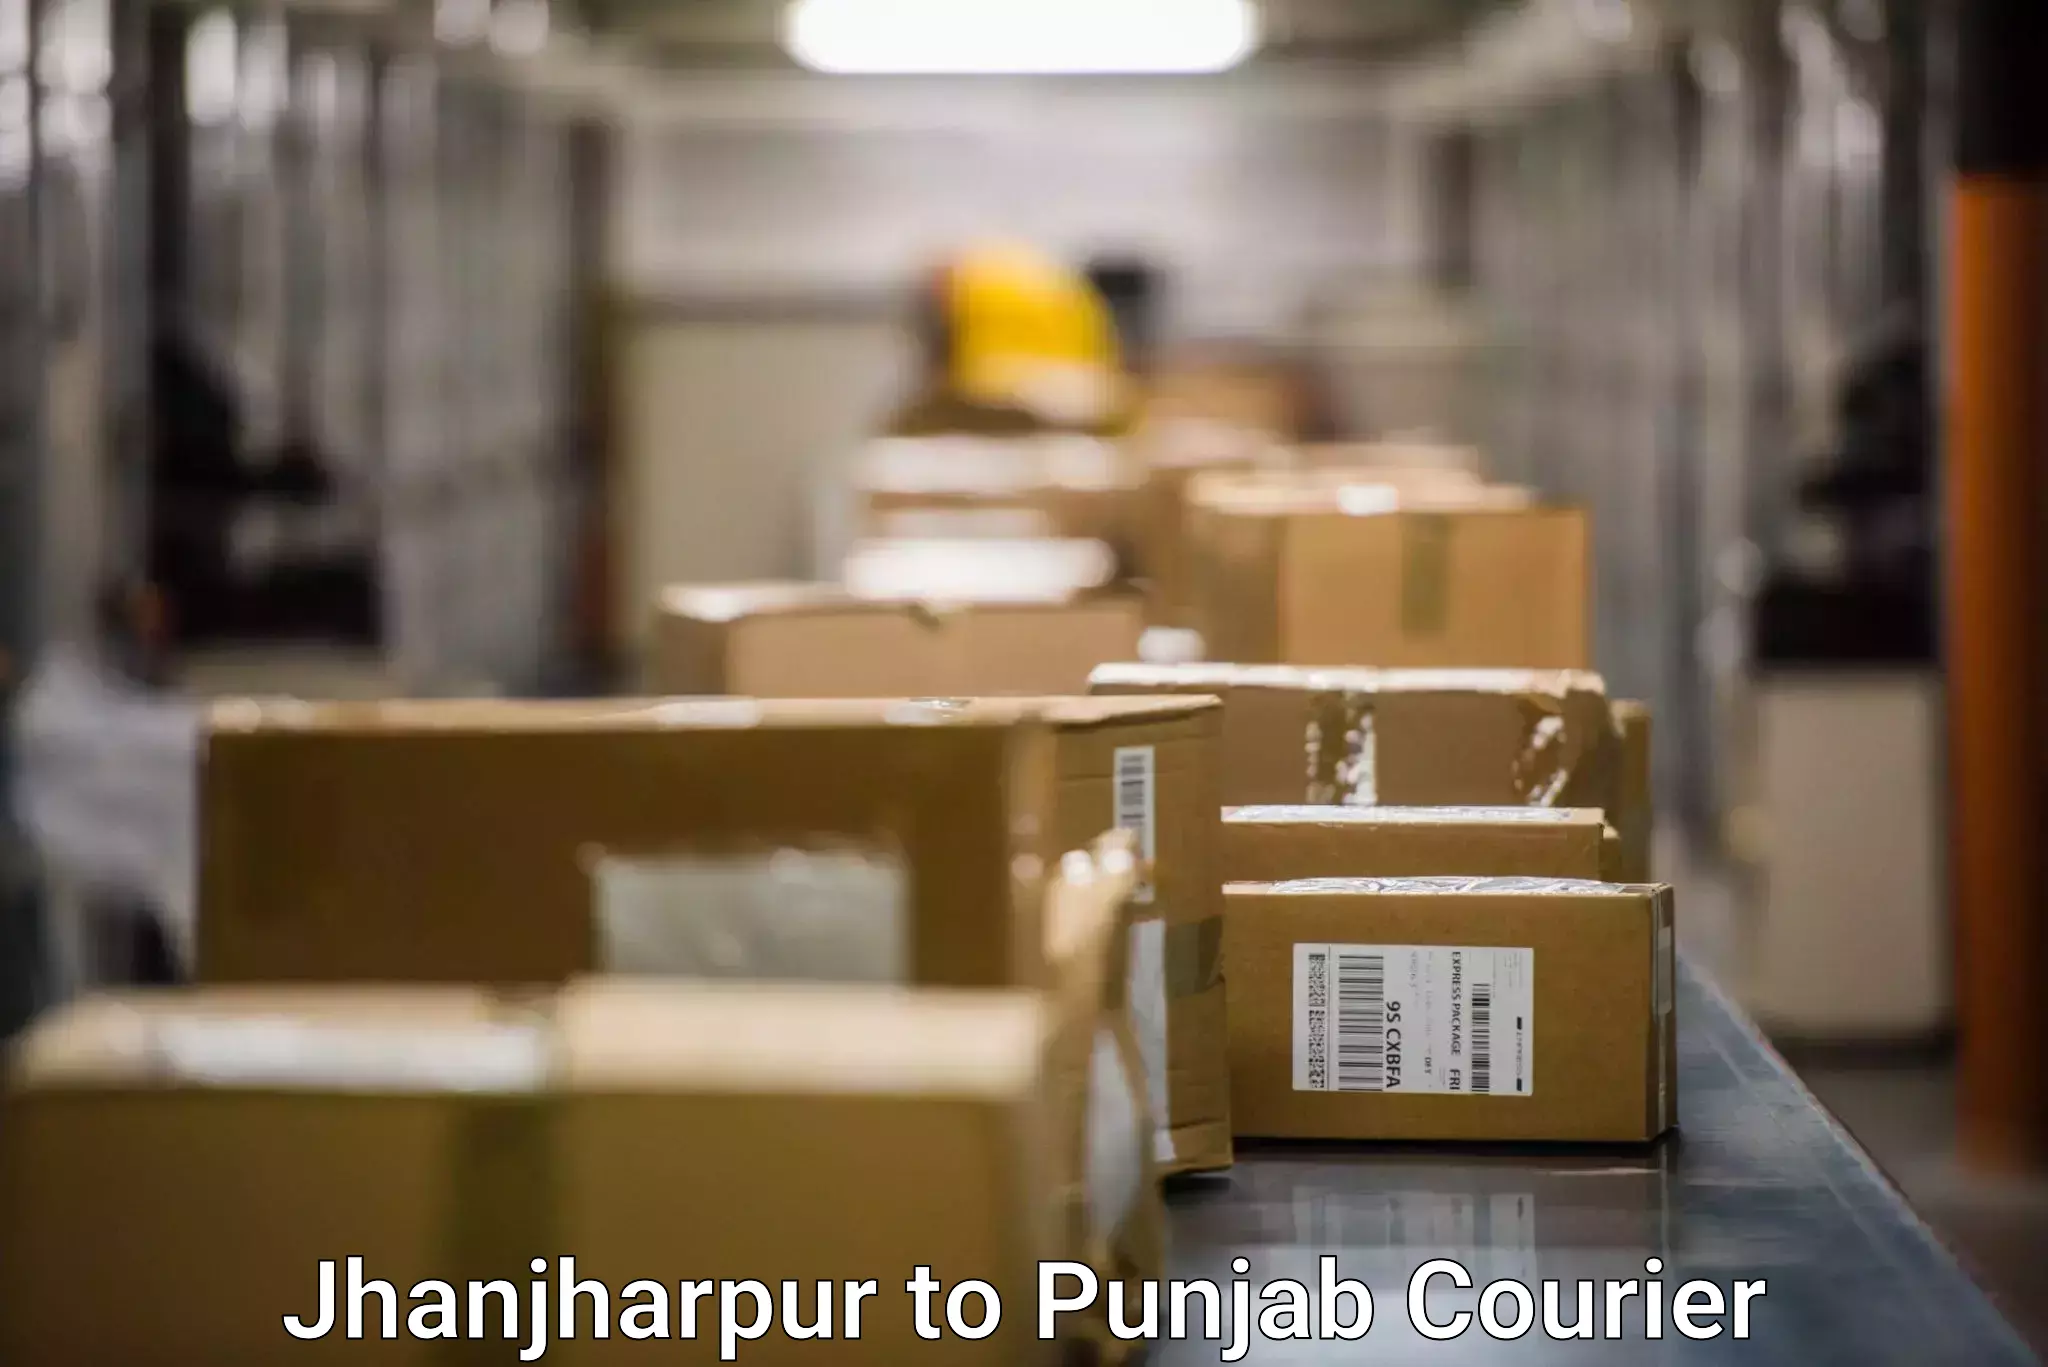 Global shipping networks Jhanjharpur to Jalalabad